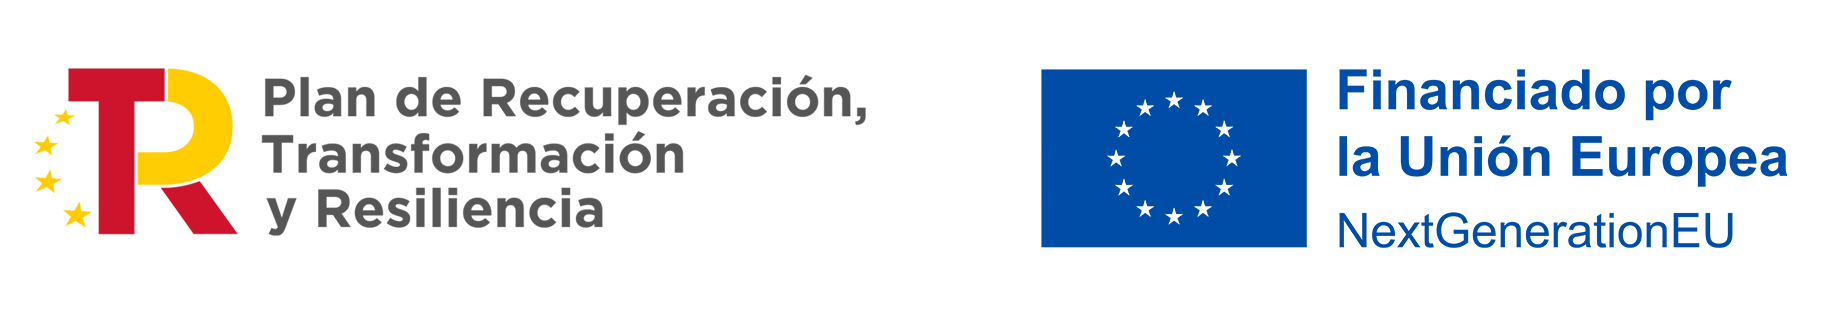 Imagen del logo corporativo de Red.es